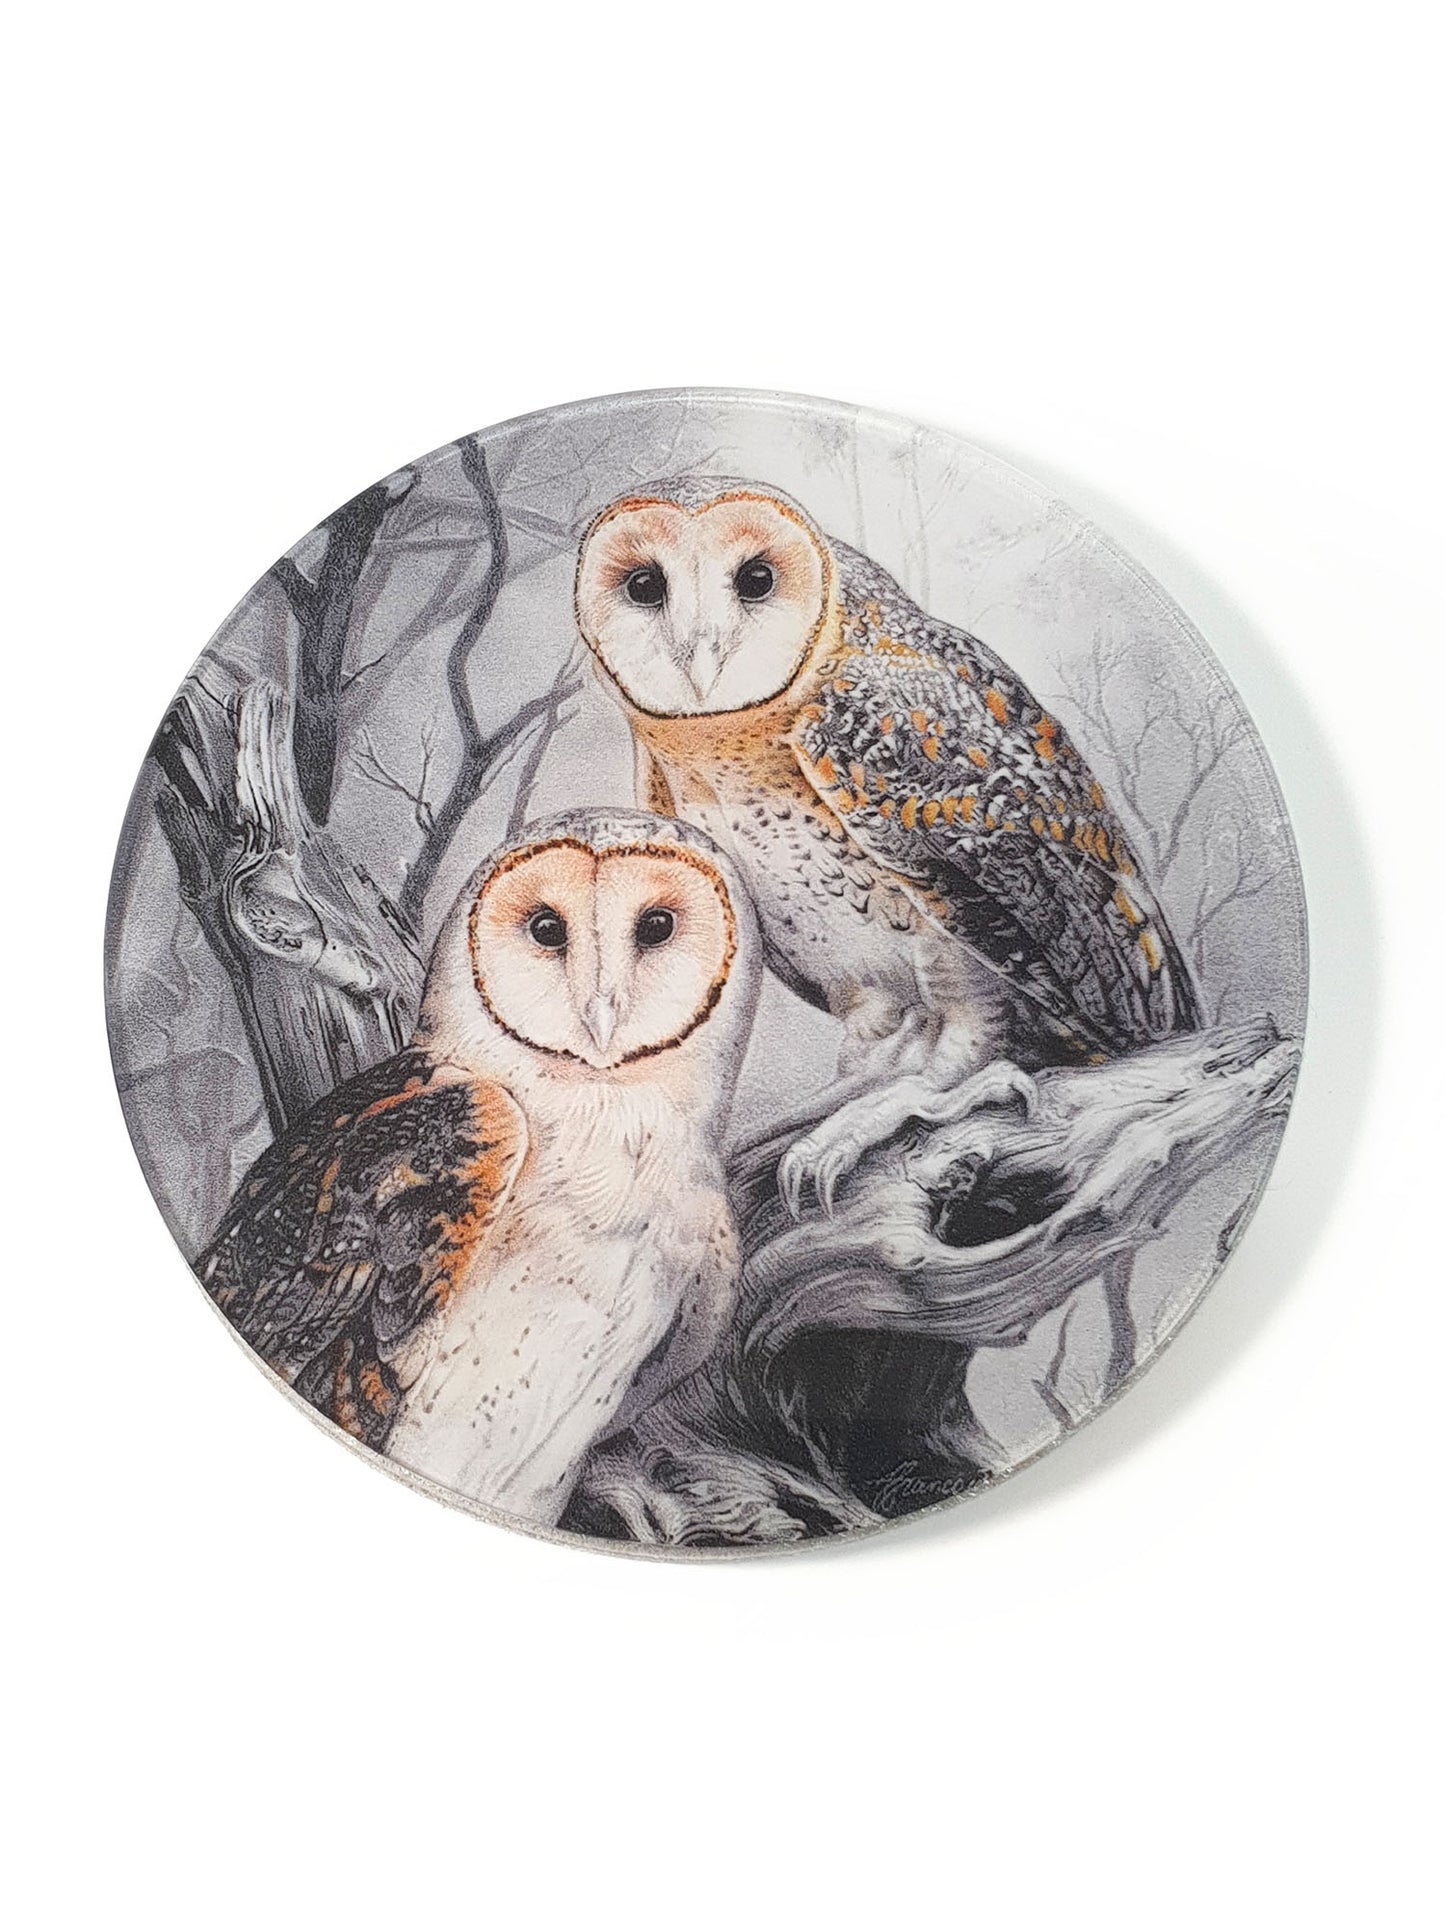 'Masked Owl' acrylic coaster